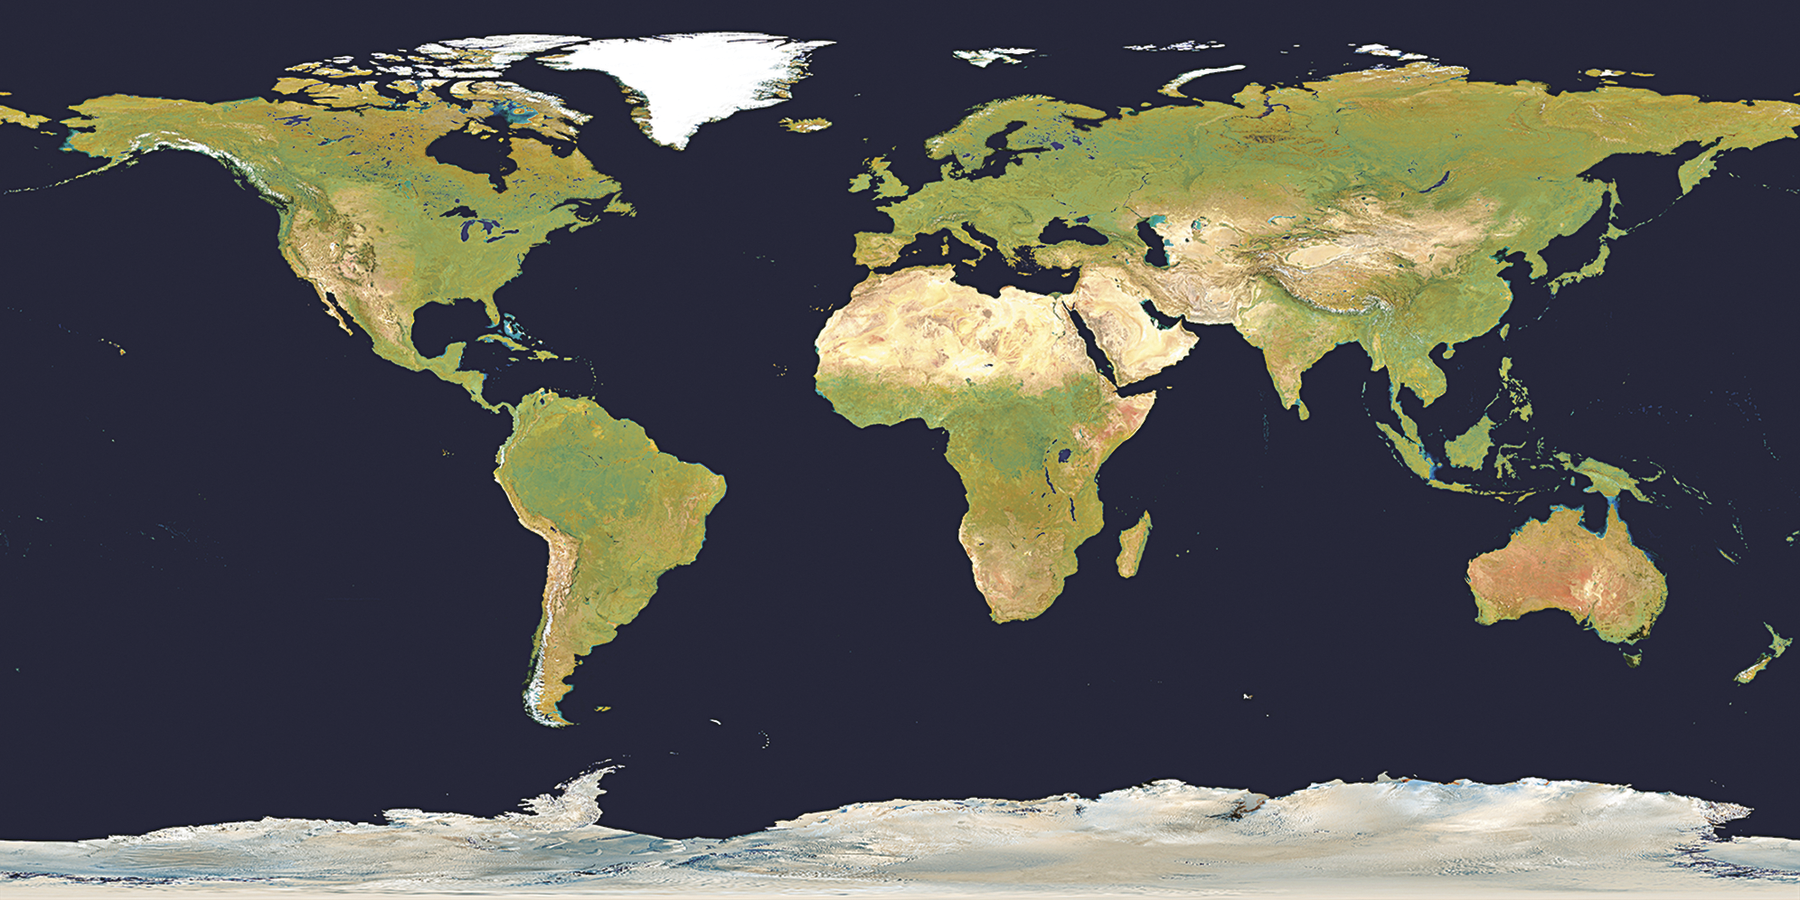 Imagem de satélite. Planisfério mostrando todos os continentes atuais em tons de verde e bege.